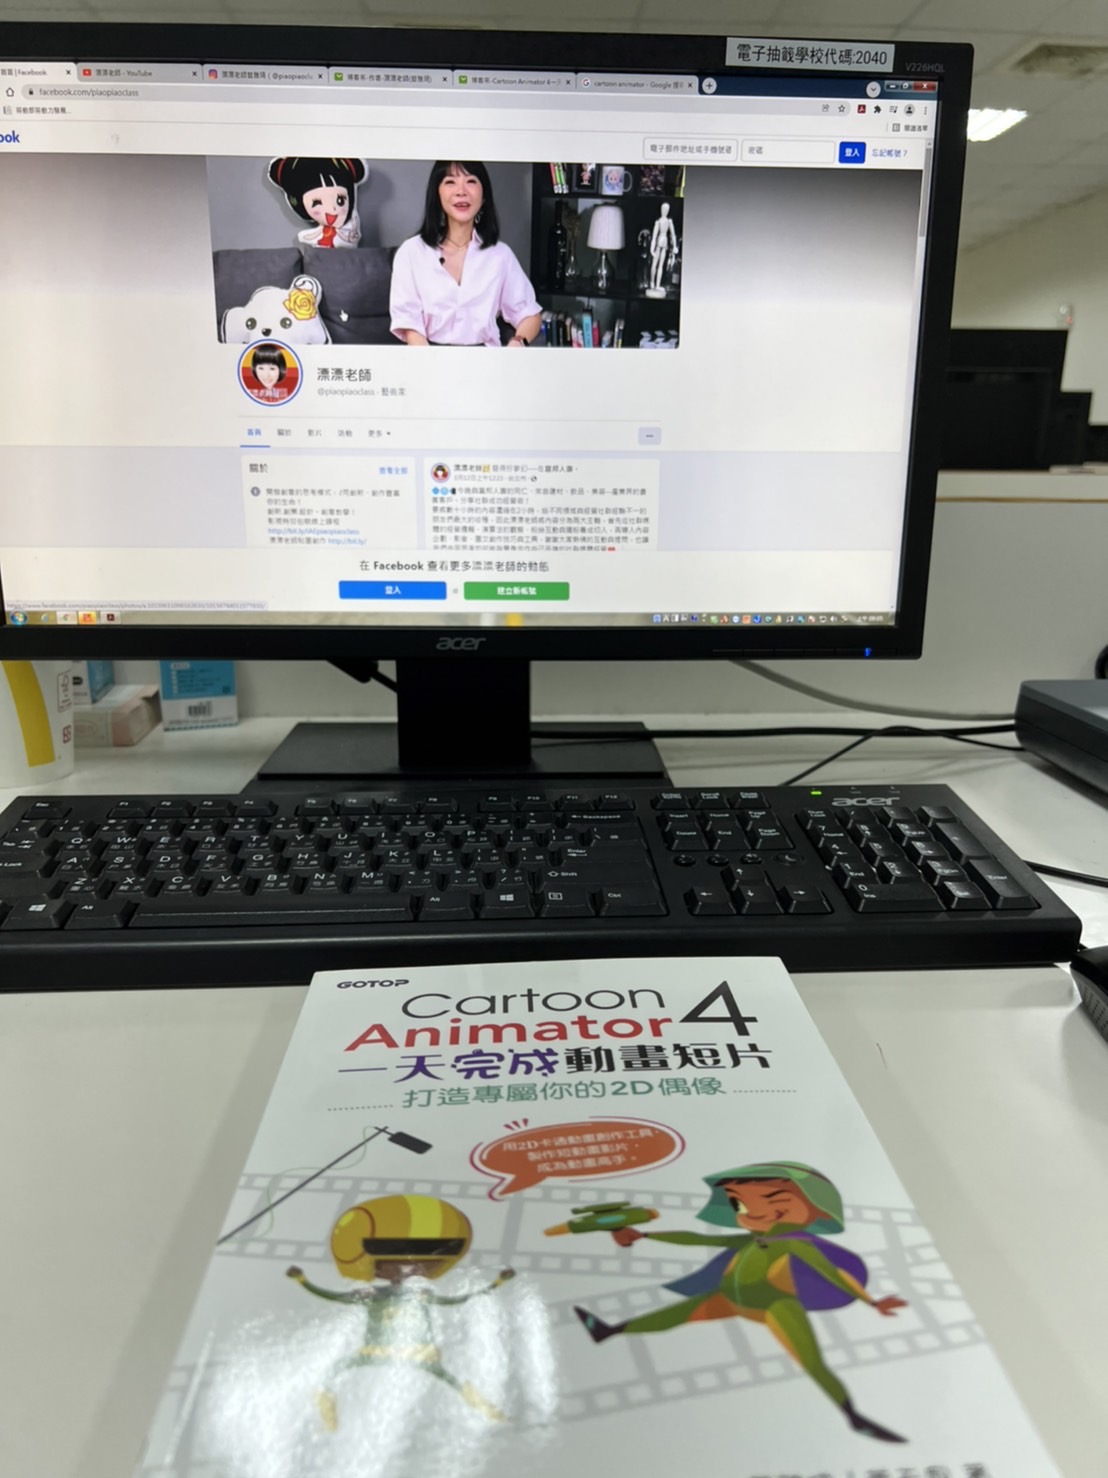 漂漂老師 x Cartoon Animator 4 一天完成動畫短片